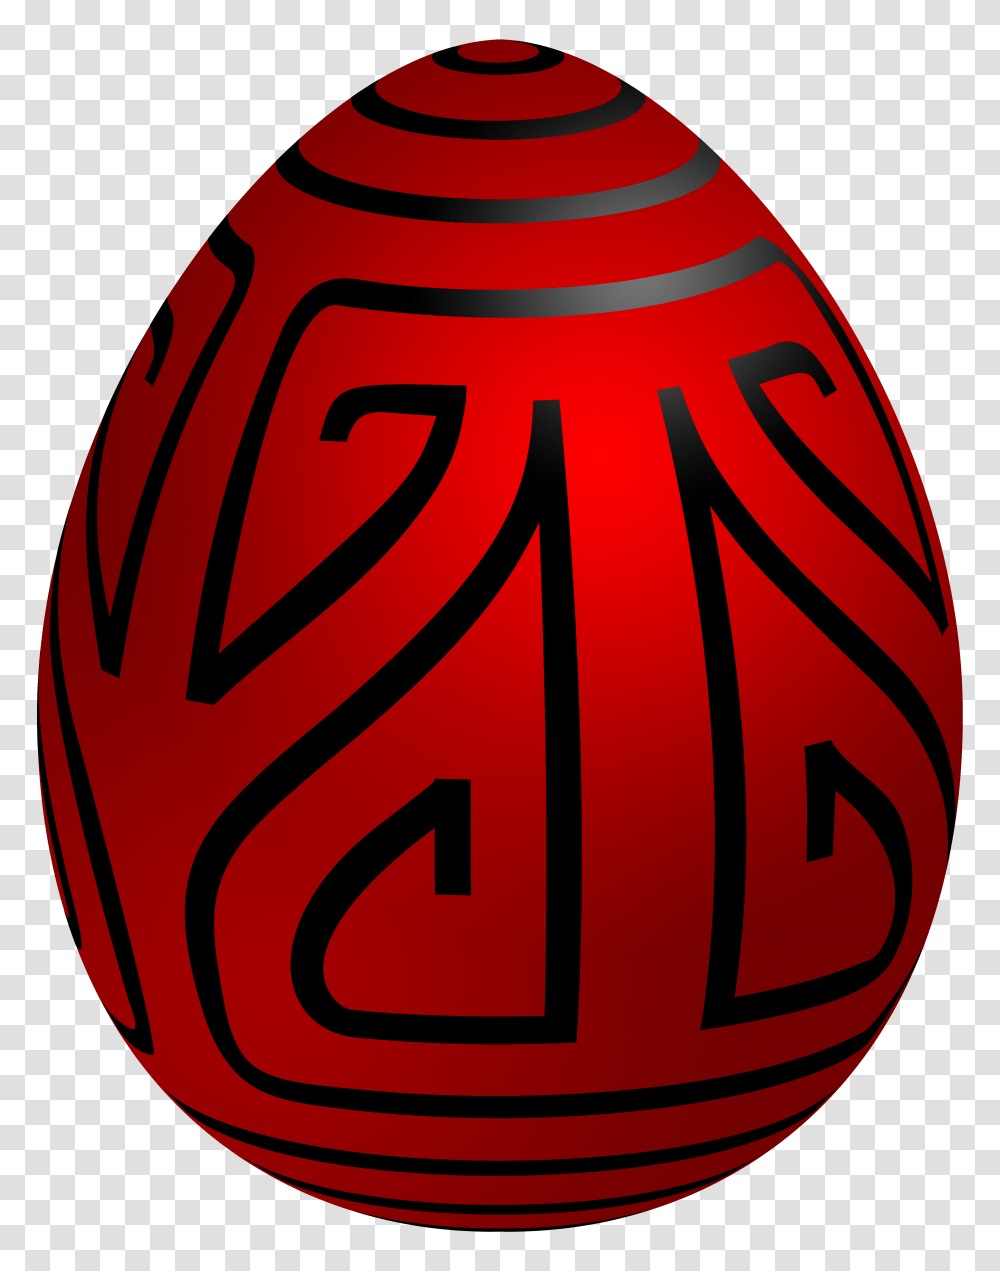 Easter Red Deco Egg Clip Art, Food, Plant, Jar, Pottery Transparent Png